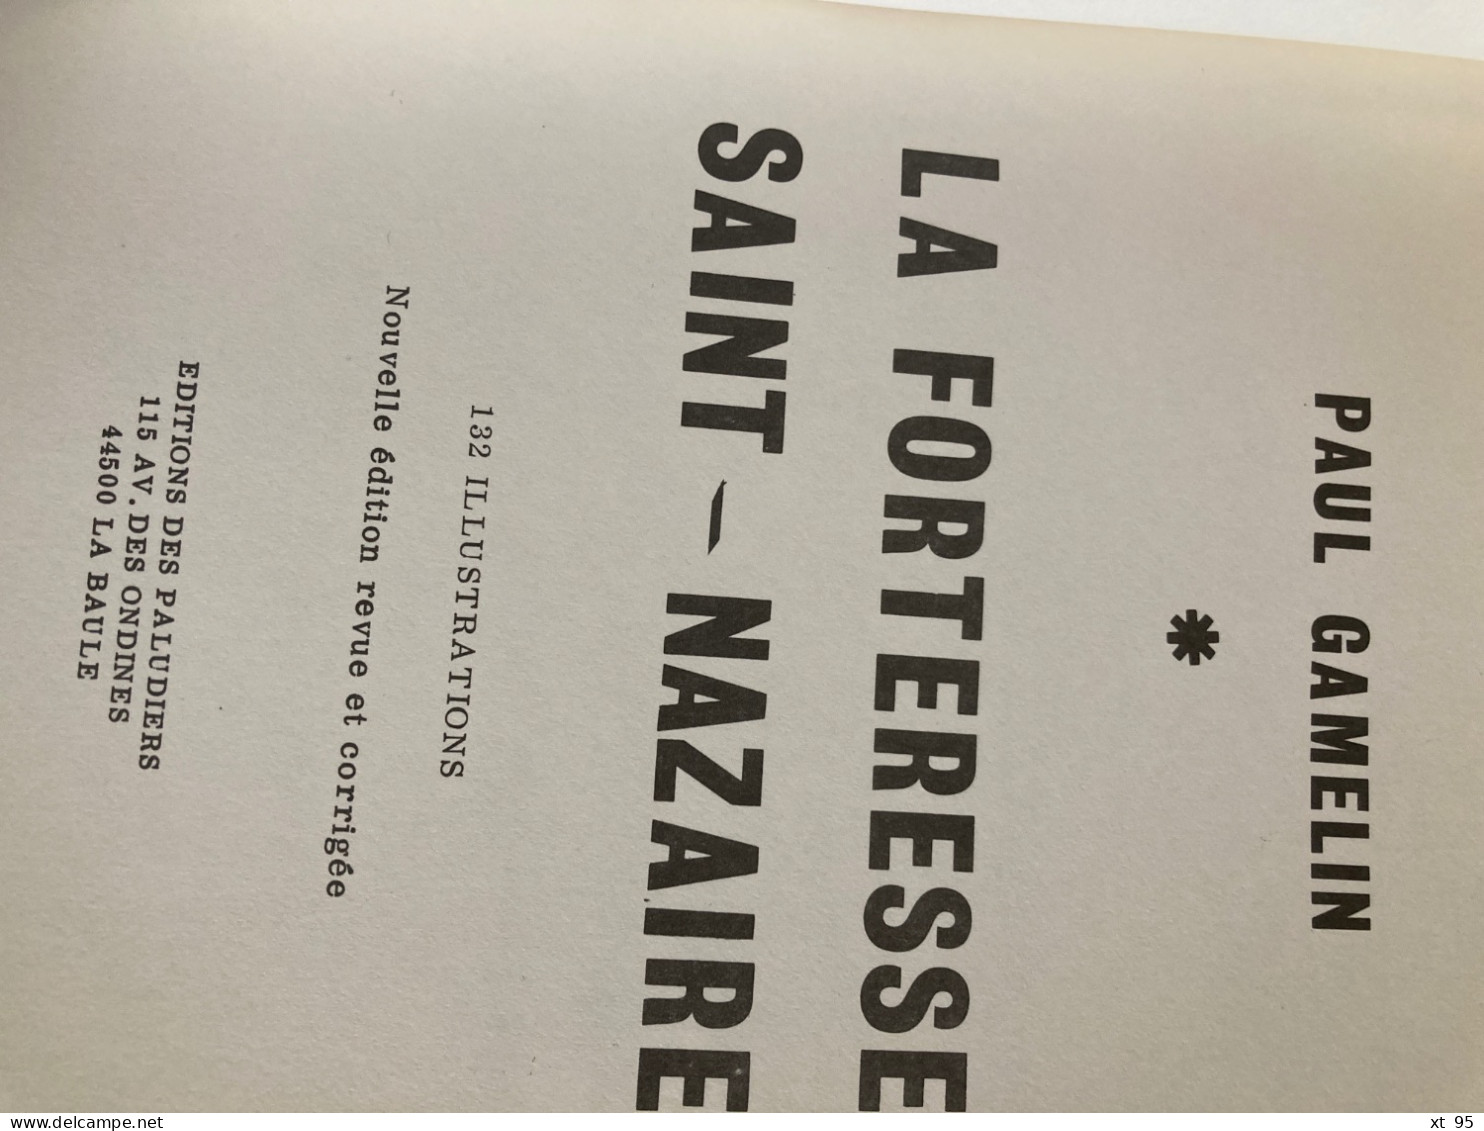 La Forteresse De Saint Nazaire - 1940-1945 - Paul Gamelin - 1980 - 116 Pages - War 1939-45